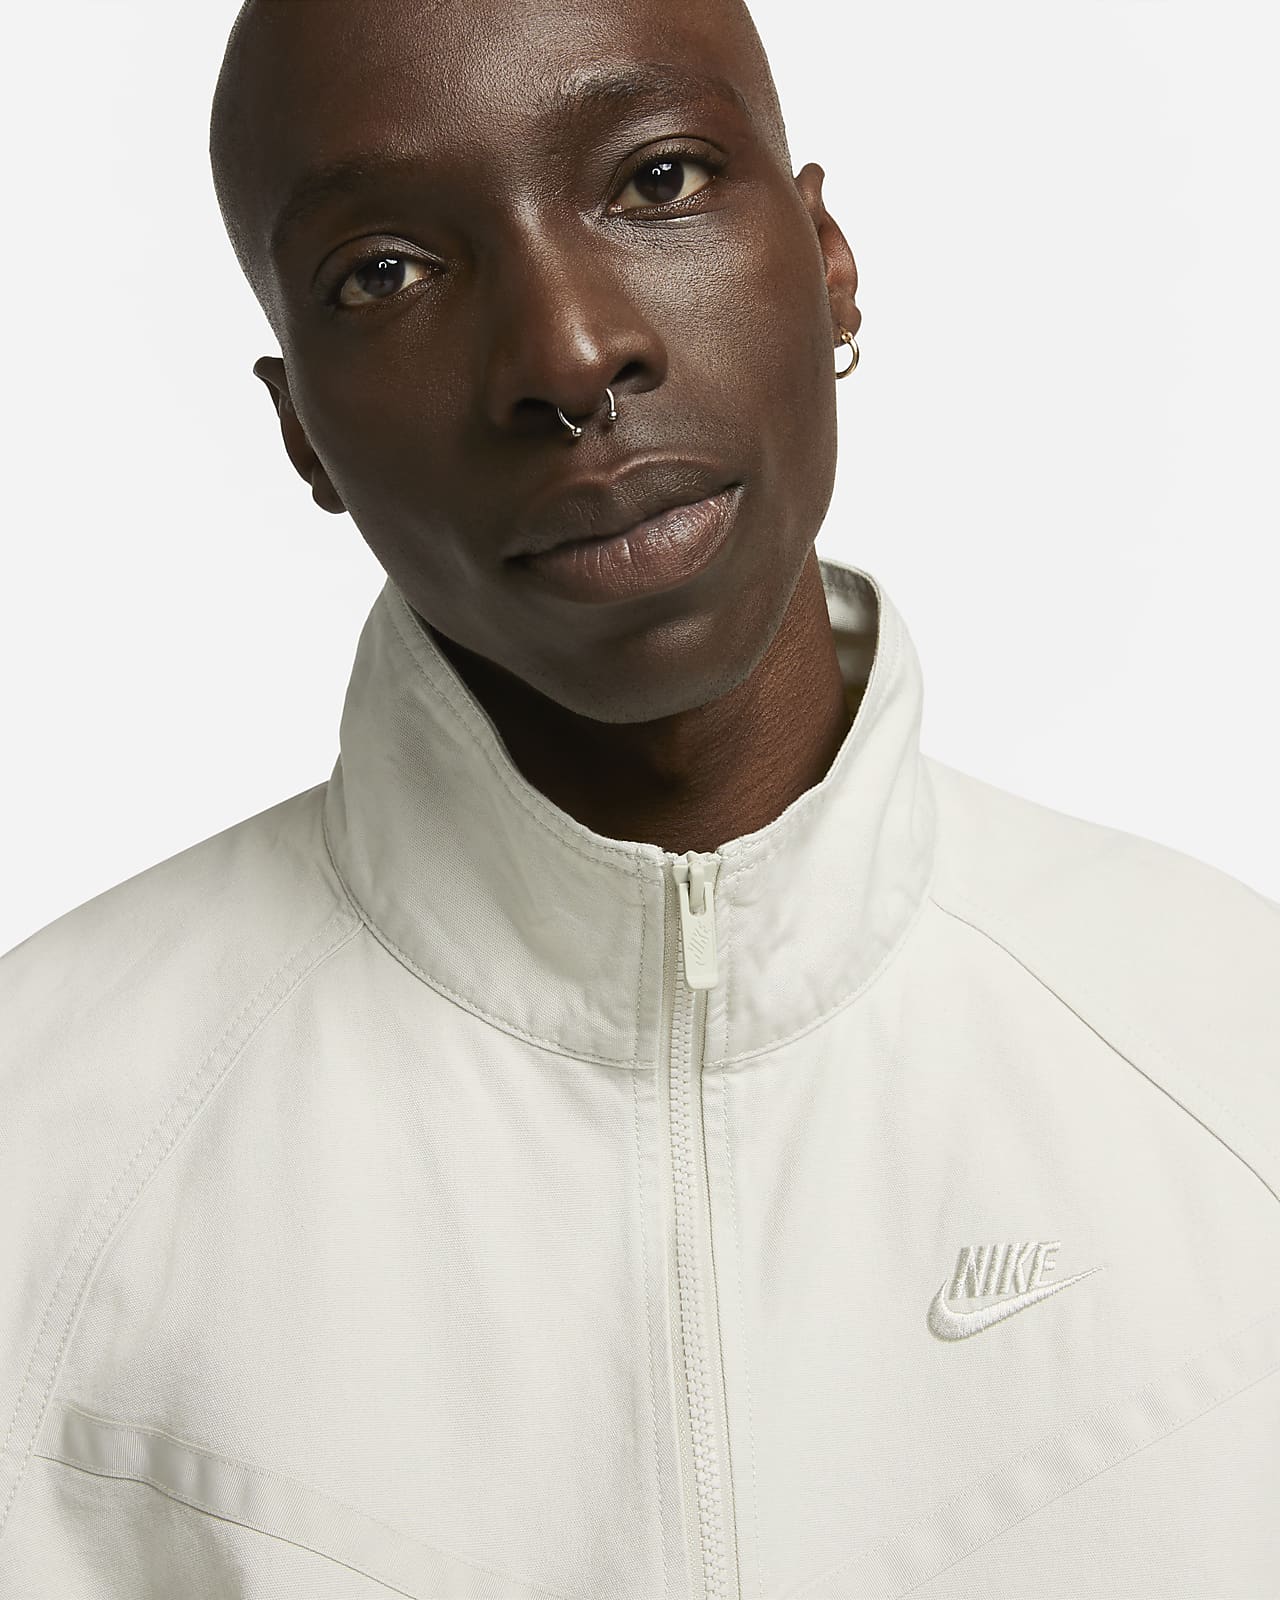 Nike Windrunner Men\'s Jacket. Canvas